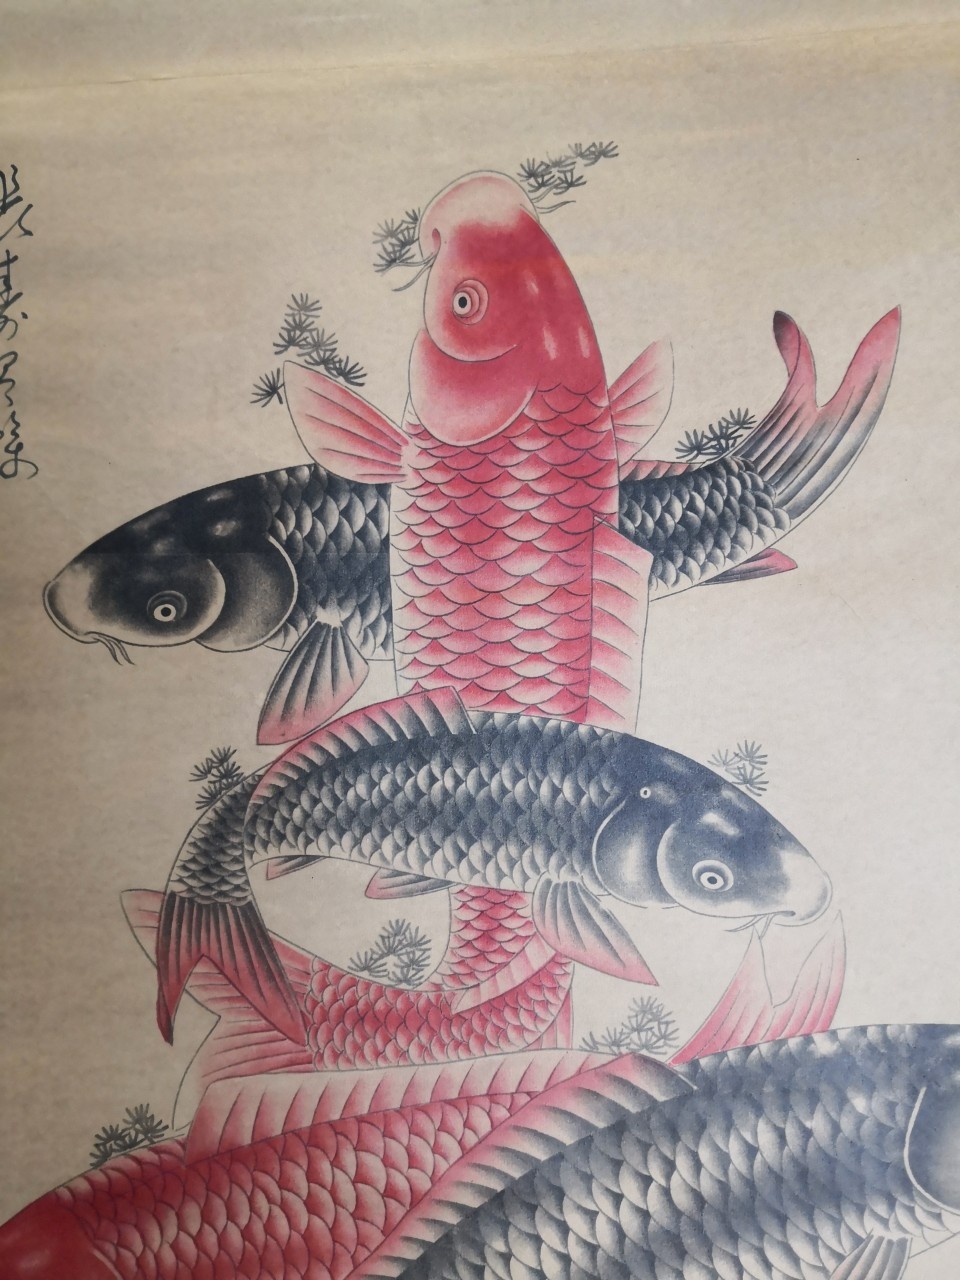 李方膺鱼寿图图片